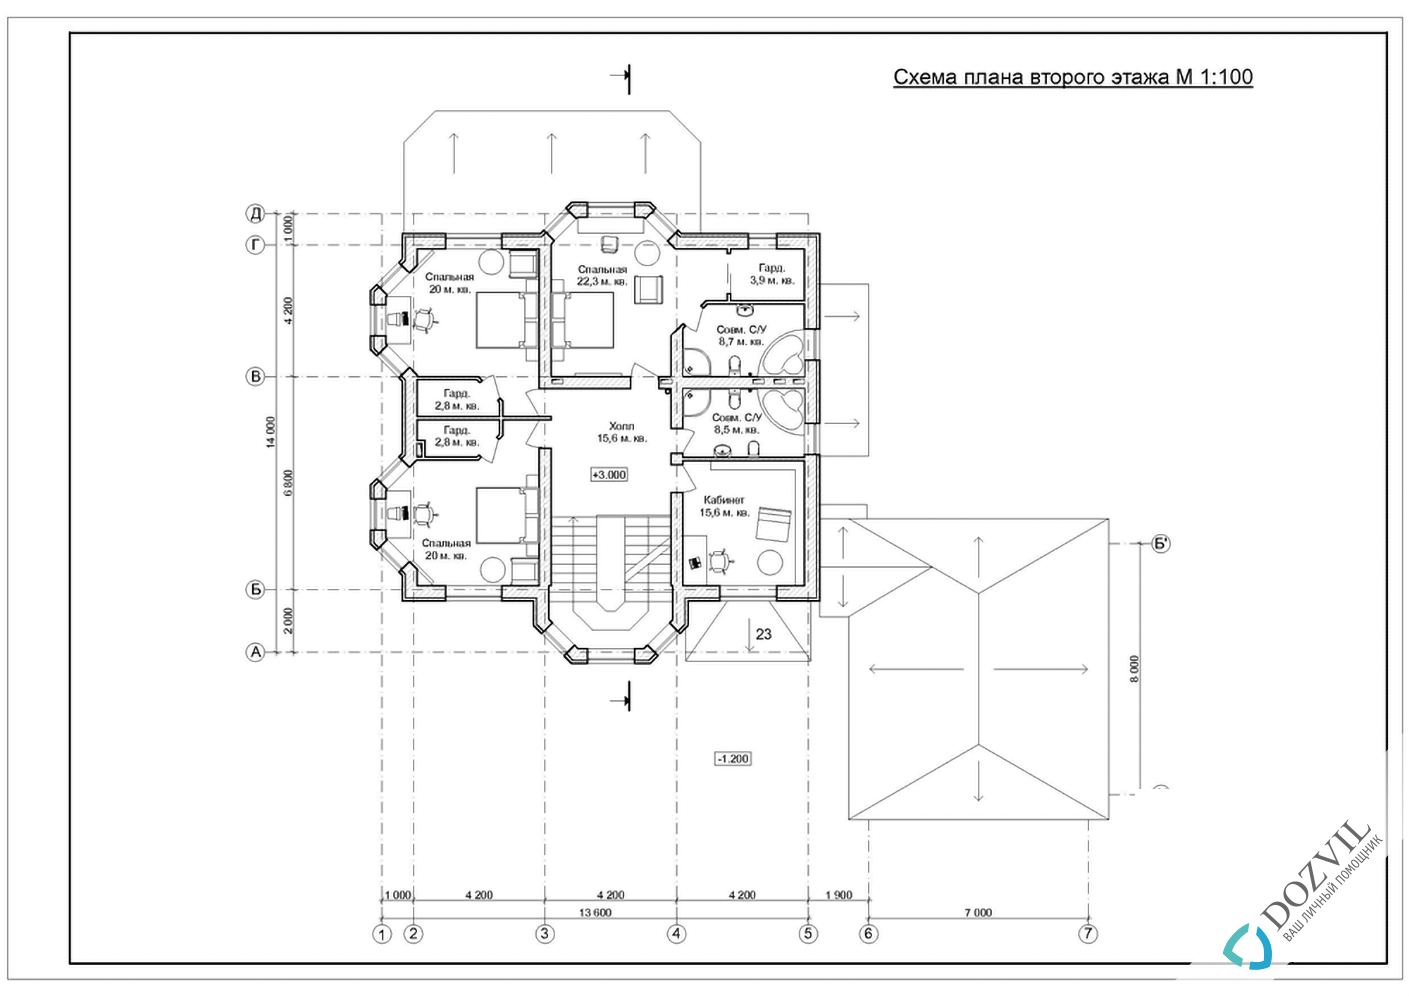 Оформление гаража> Гараж на участке рядом с жилым или садовым домом > 2 этап - Разработка эскиза намерений строительства